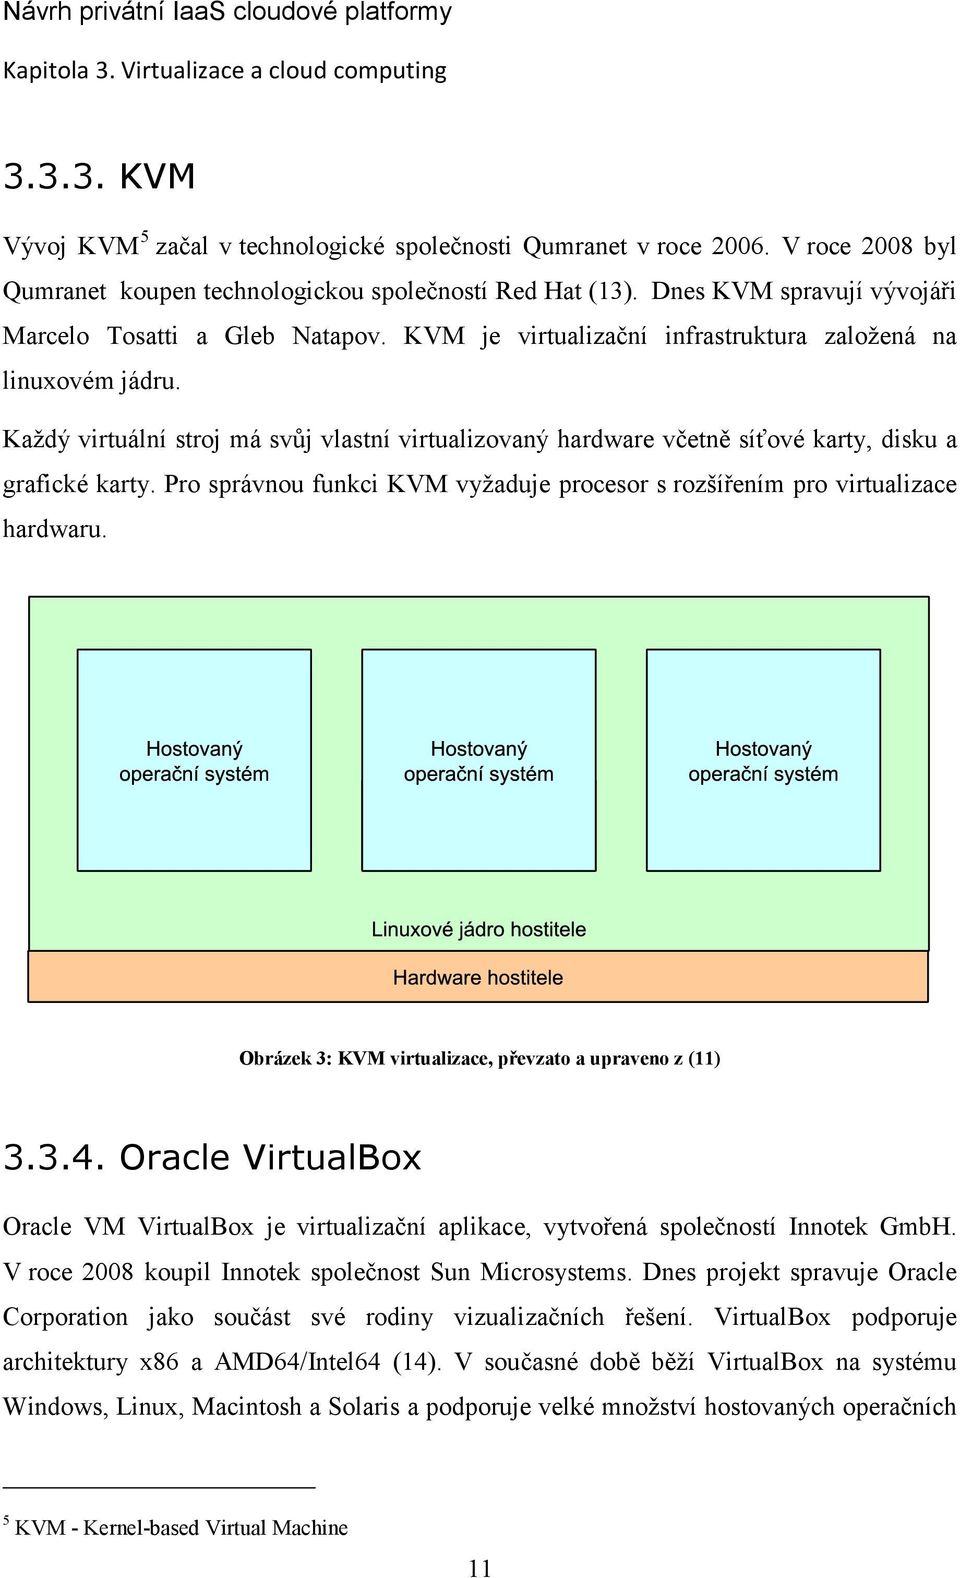 Každý virtuální stroj má svůj vlastní virtualizovaný hardware včetně síťové karty, disku a grafické karty. Pro správnou funkci KVM vyžaduje procesor s rozšířením pro virtualizace hardwaru.